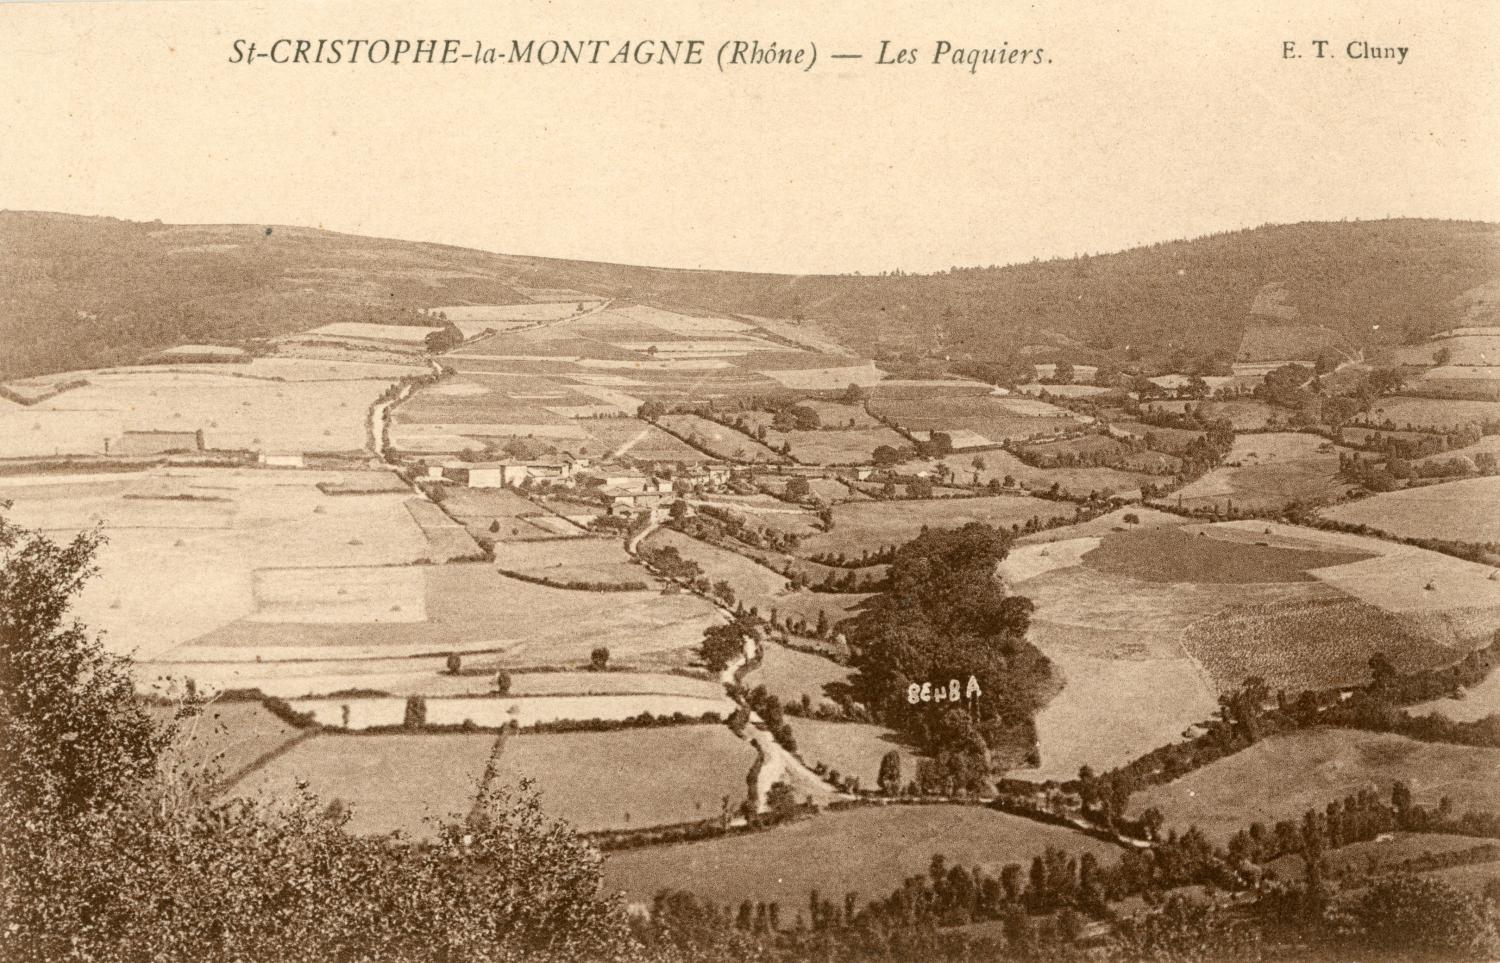 St-Christophe-la-Montagne (Rhône). - Les Paquiers